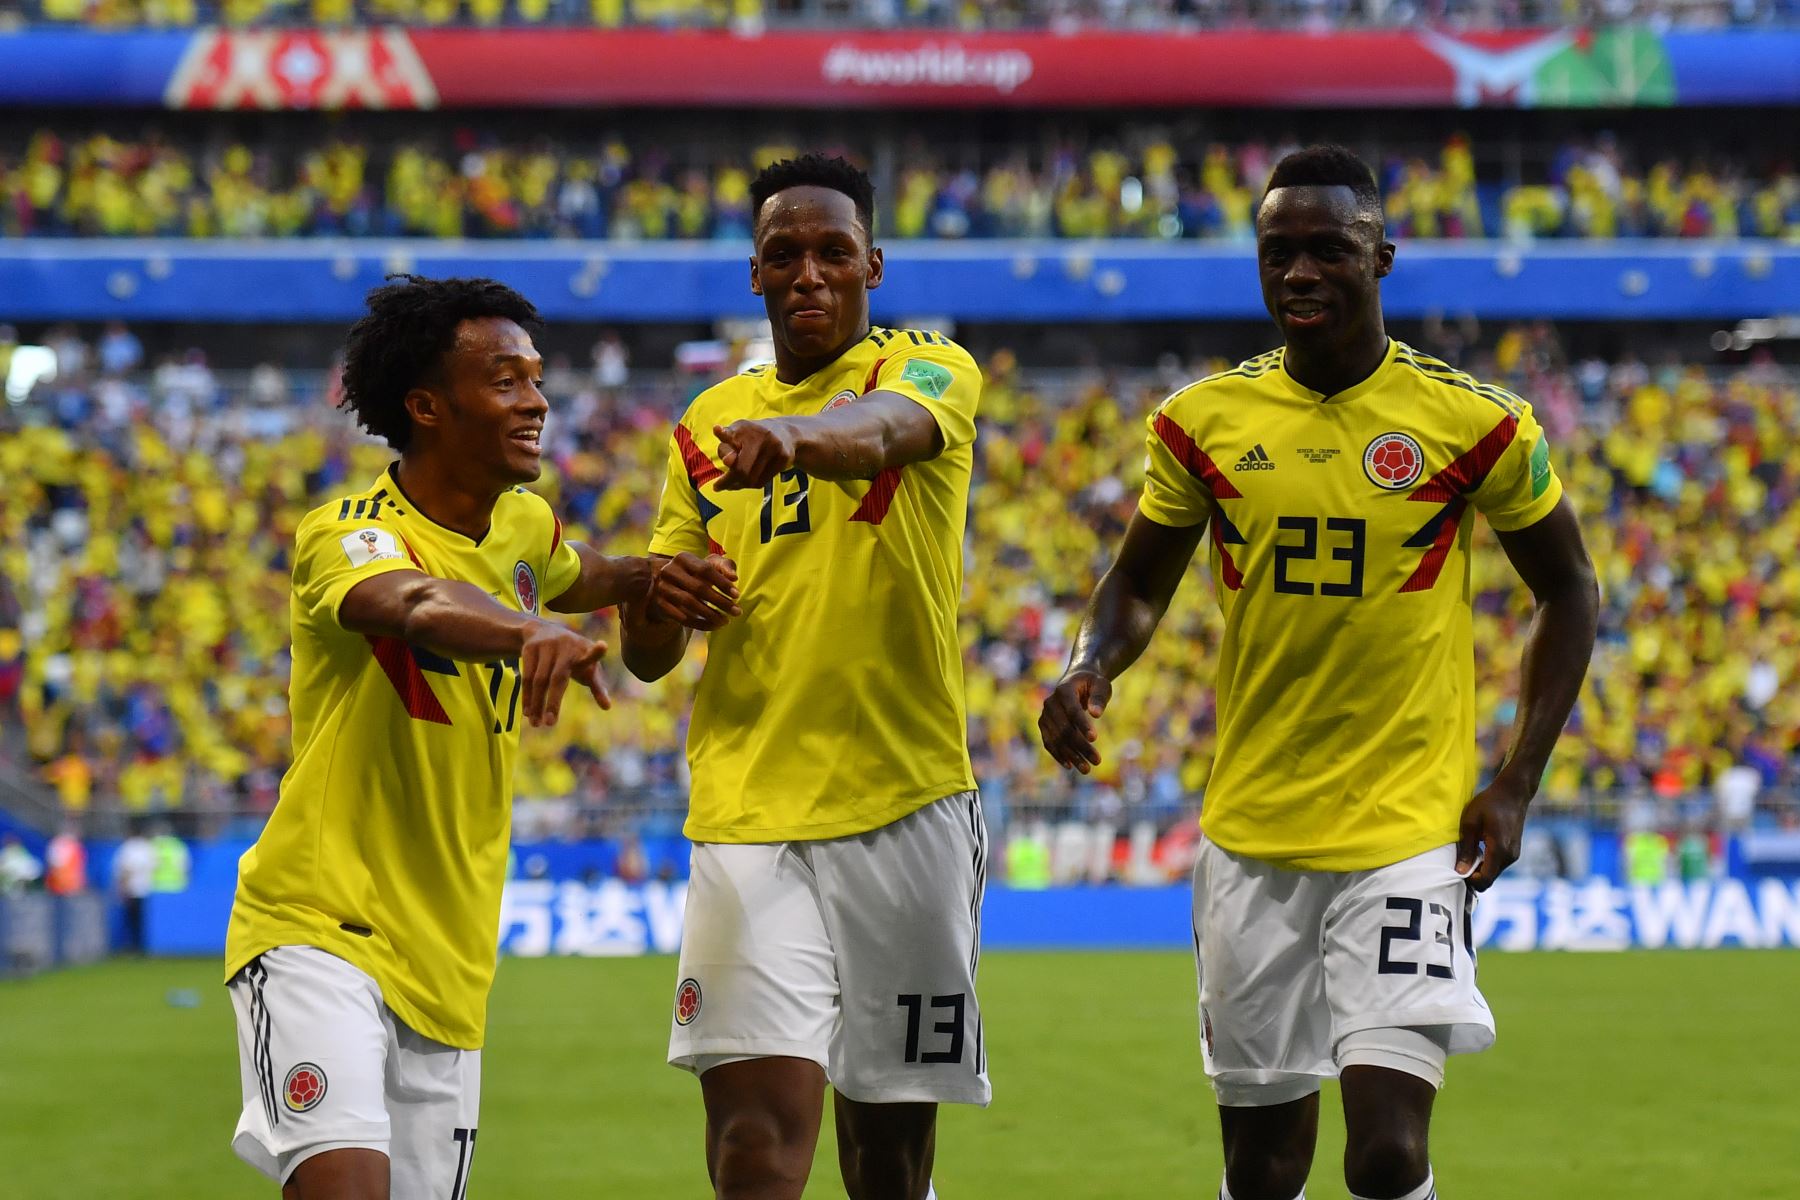 El defensor colombiano Yerry Mina (C) celebra con sus compañeros después de anotar un gol durante el partido de fútbol Rusia 2018 Grupo H de fútbol entre Senegal y Colombia en el Samara Arena en Samara el 28 de junio de 2018. / AFP